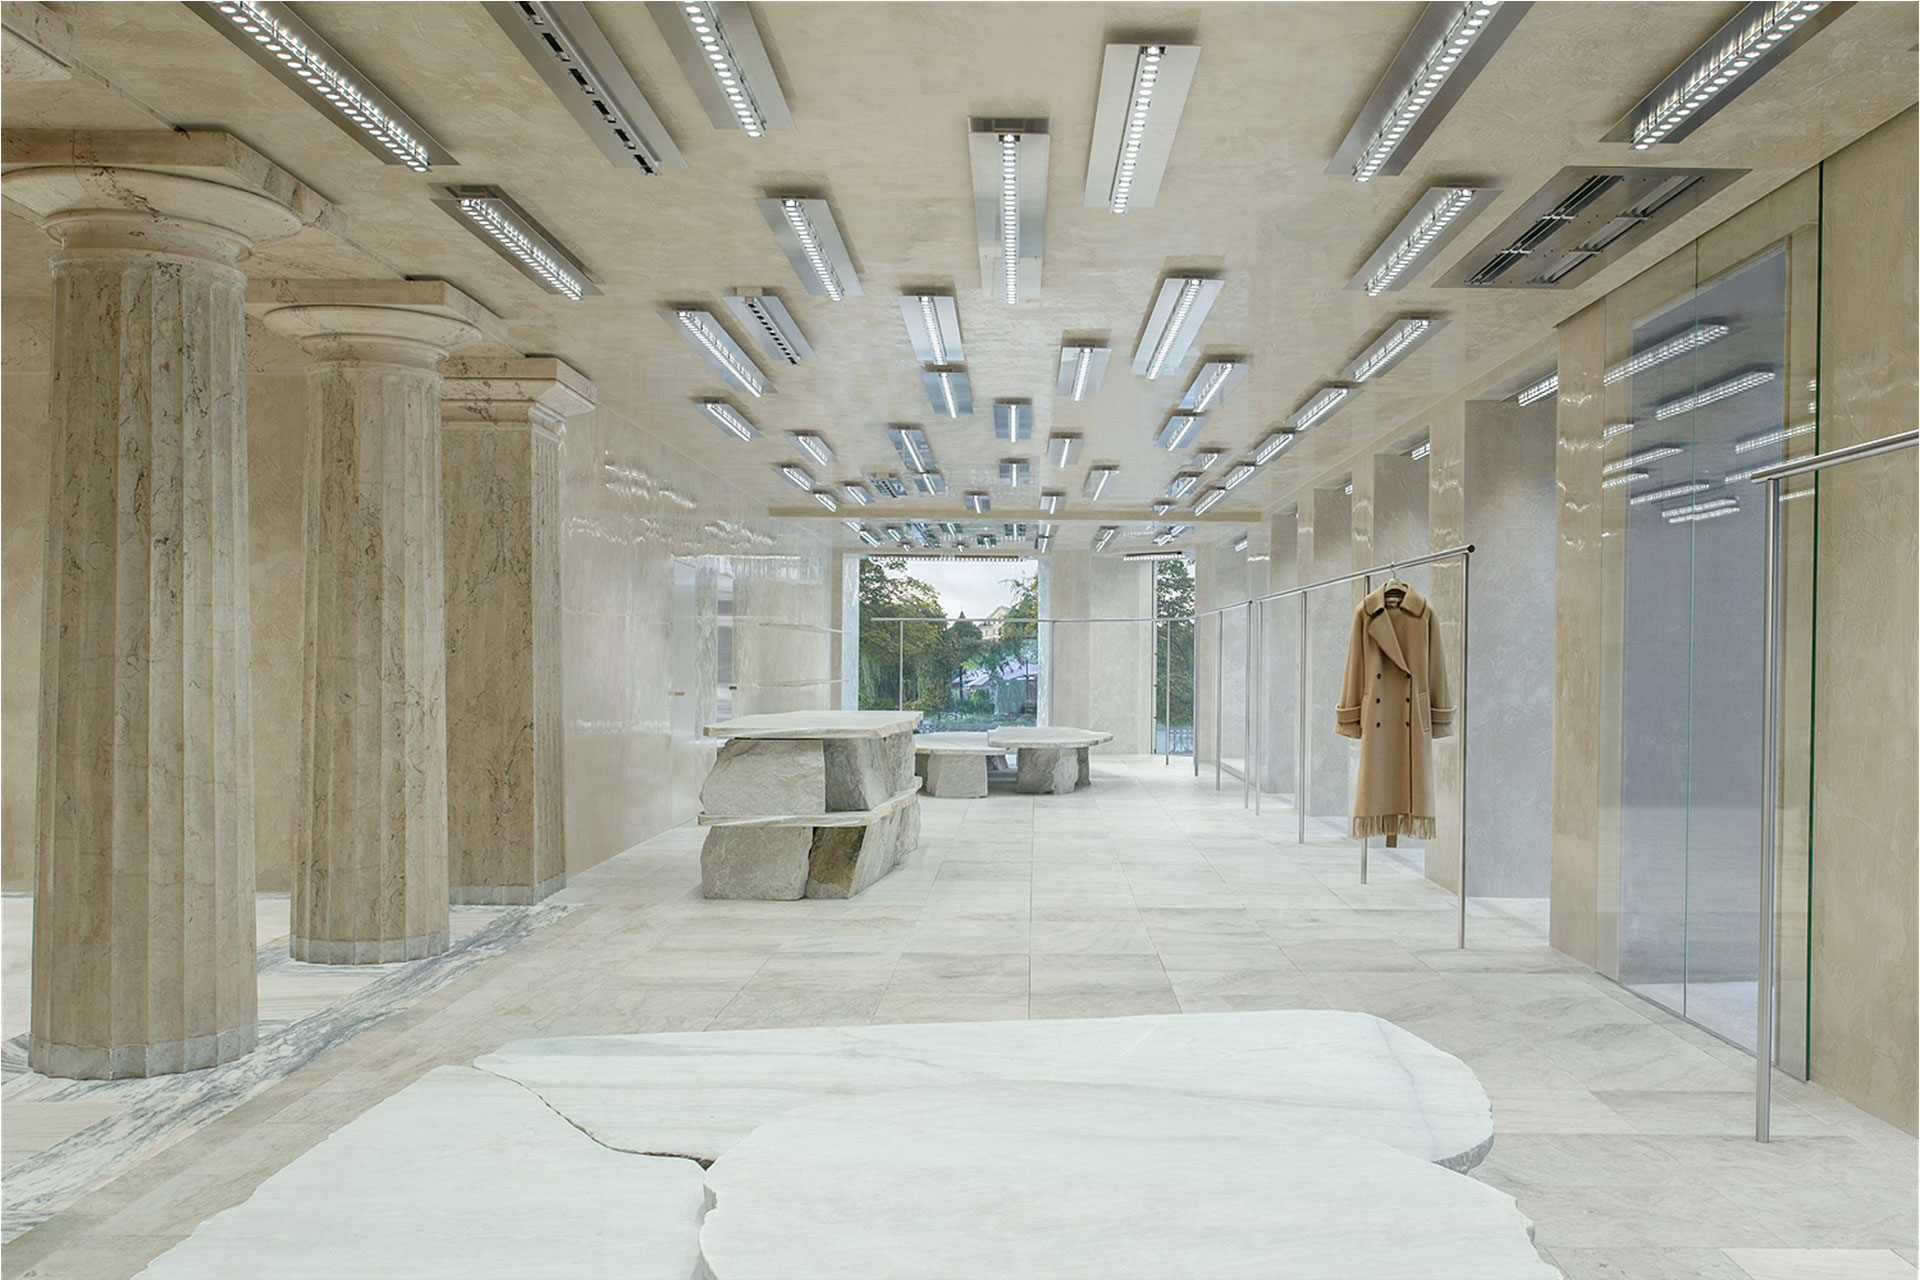 Бутик Acne Studios в Стокгольме по проекту барселонской студии Arquitectura-G